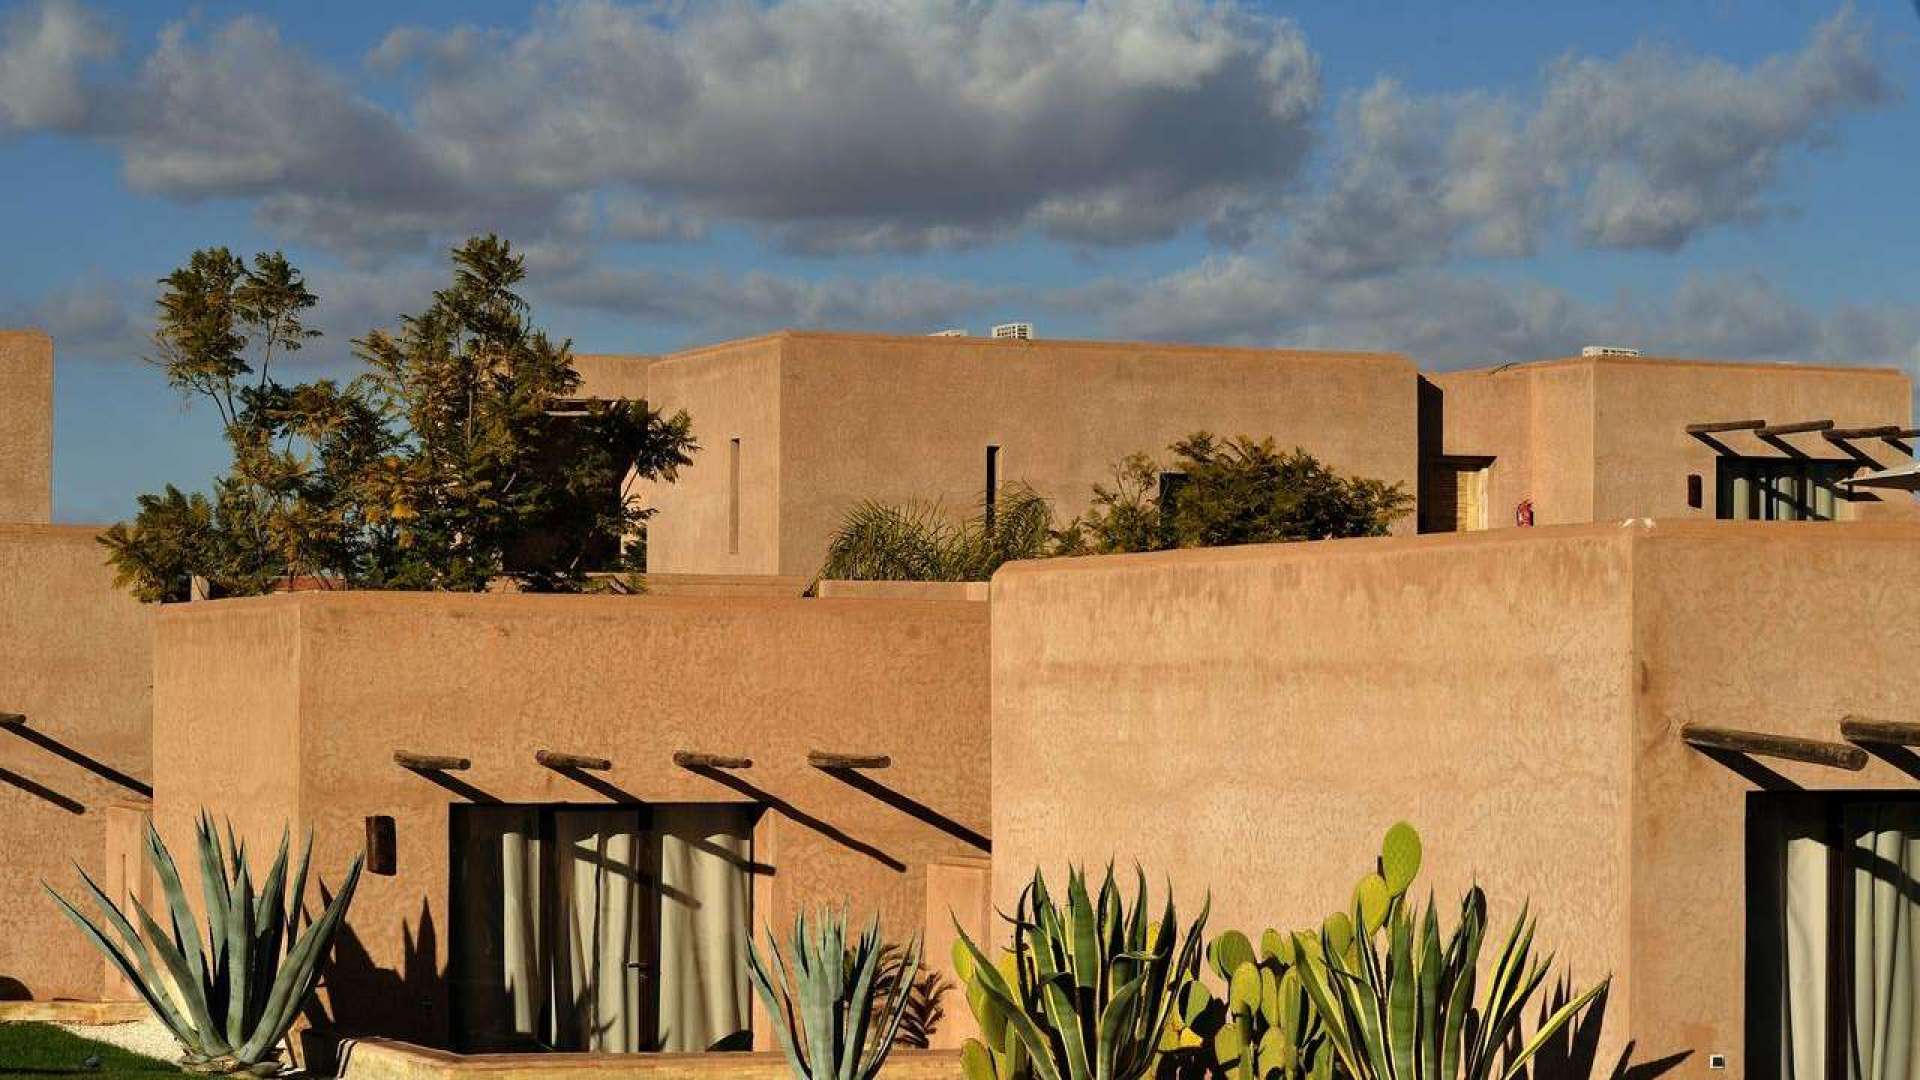 Vente,Villa,Sublime maison d’hôtes avec 10 suites, hammam et piscine à 15min. du centre de Marrakech,Marrakech,Route de l'Ourika